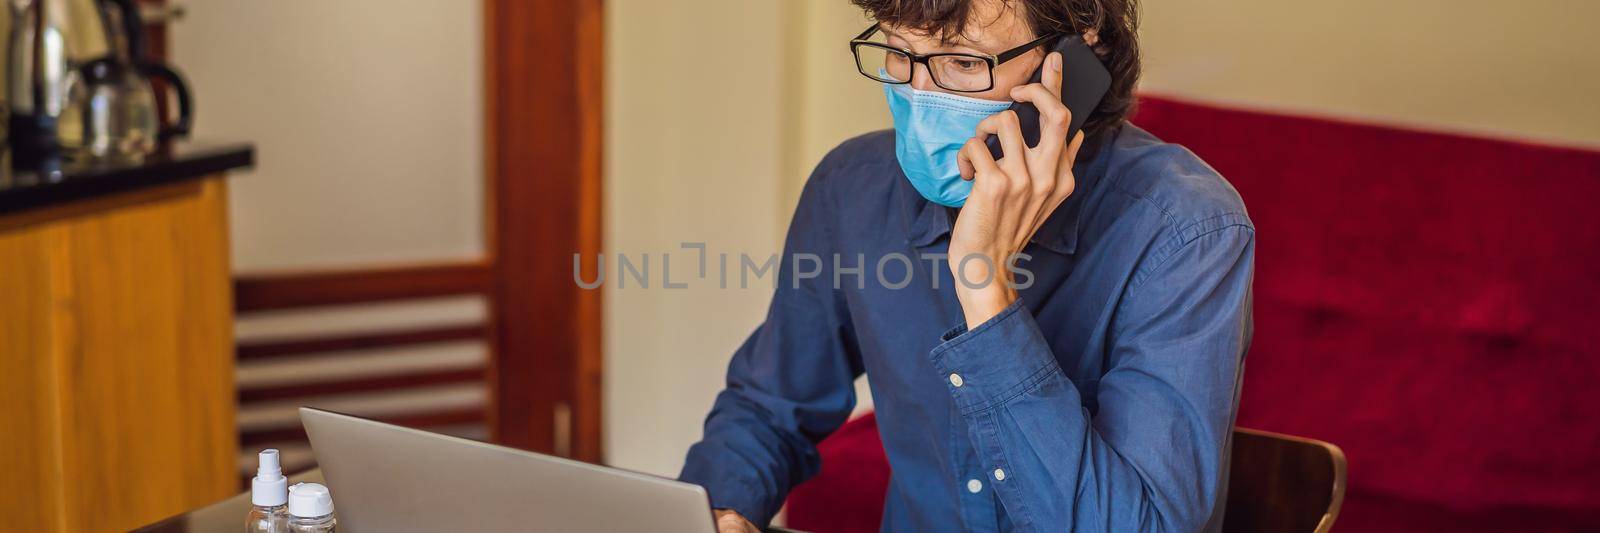 Coronavirus. Man working from home wearing protective mask. quarantine for coronavirus wearing protective mask. Working from home BANNER, LONG FORMAT by galitskaya